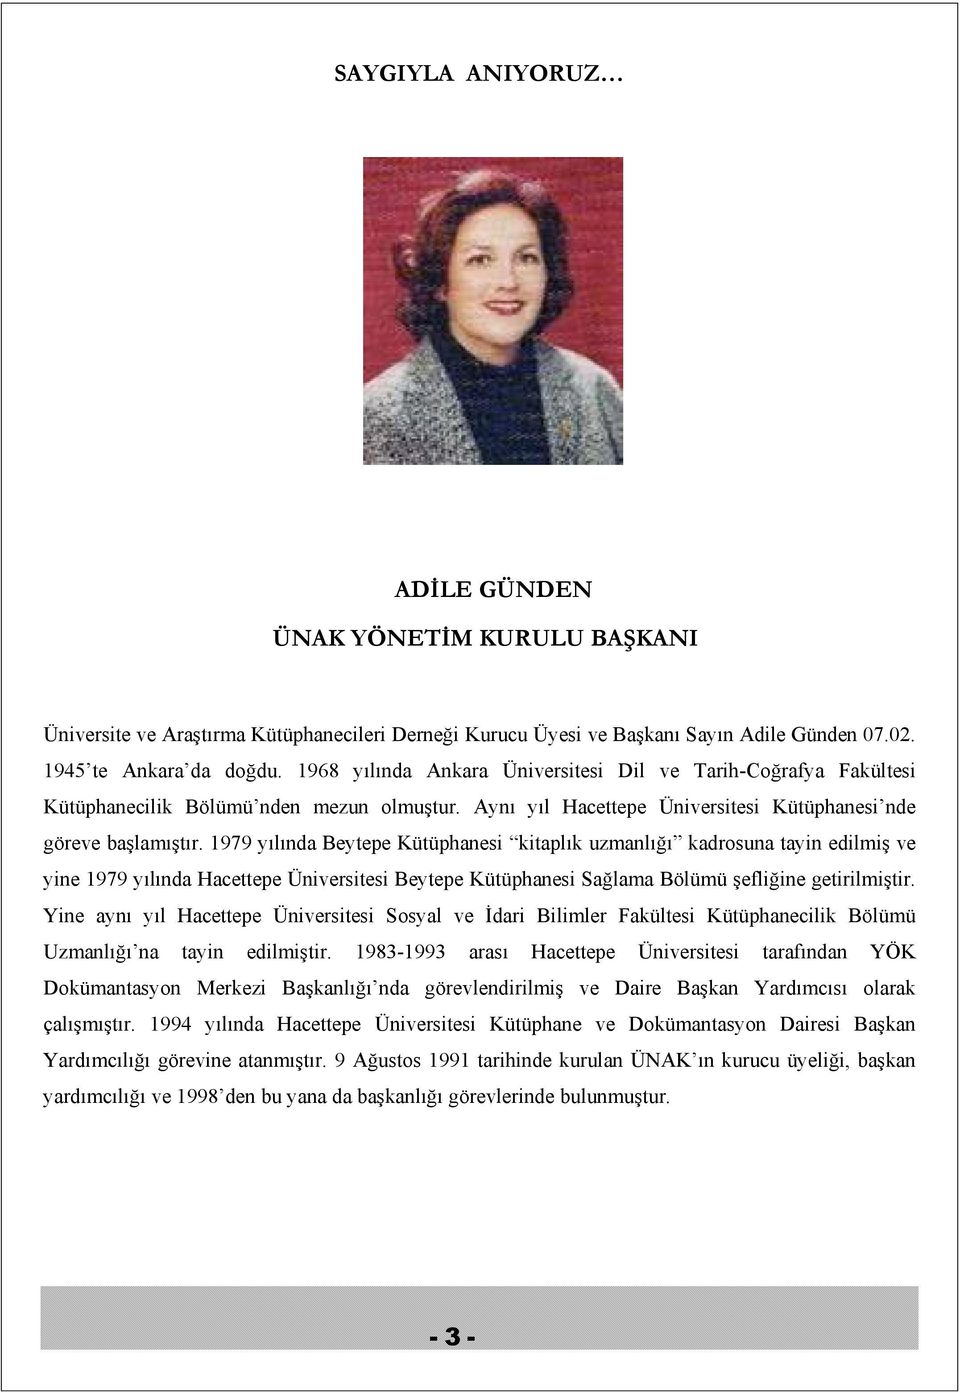 1979 yılında Beytepe Kütüphanesi kitaplık uzmanlığı kadrosuna tayin edilmiş ve yine 1979 yılında Hacettepe Üniversitesi Beytepe Kütüphanesi Sağlama Bölümü şefliğine getirilmiştir.